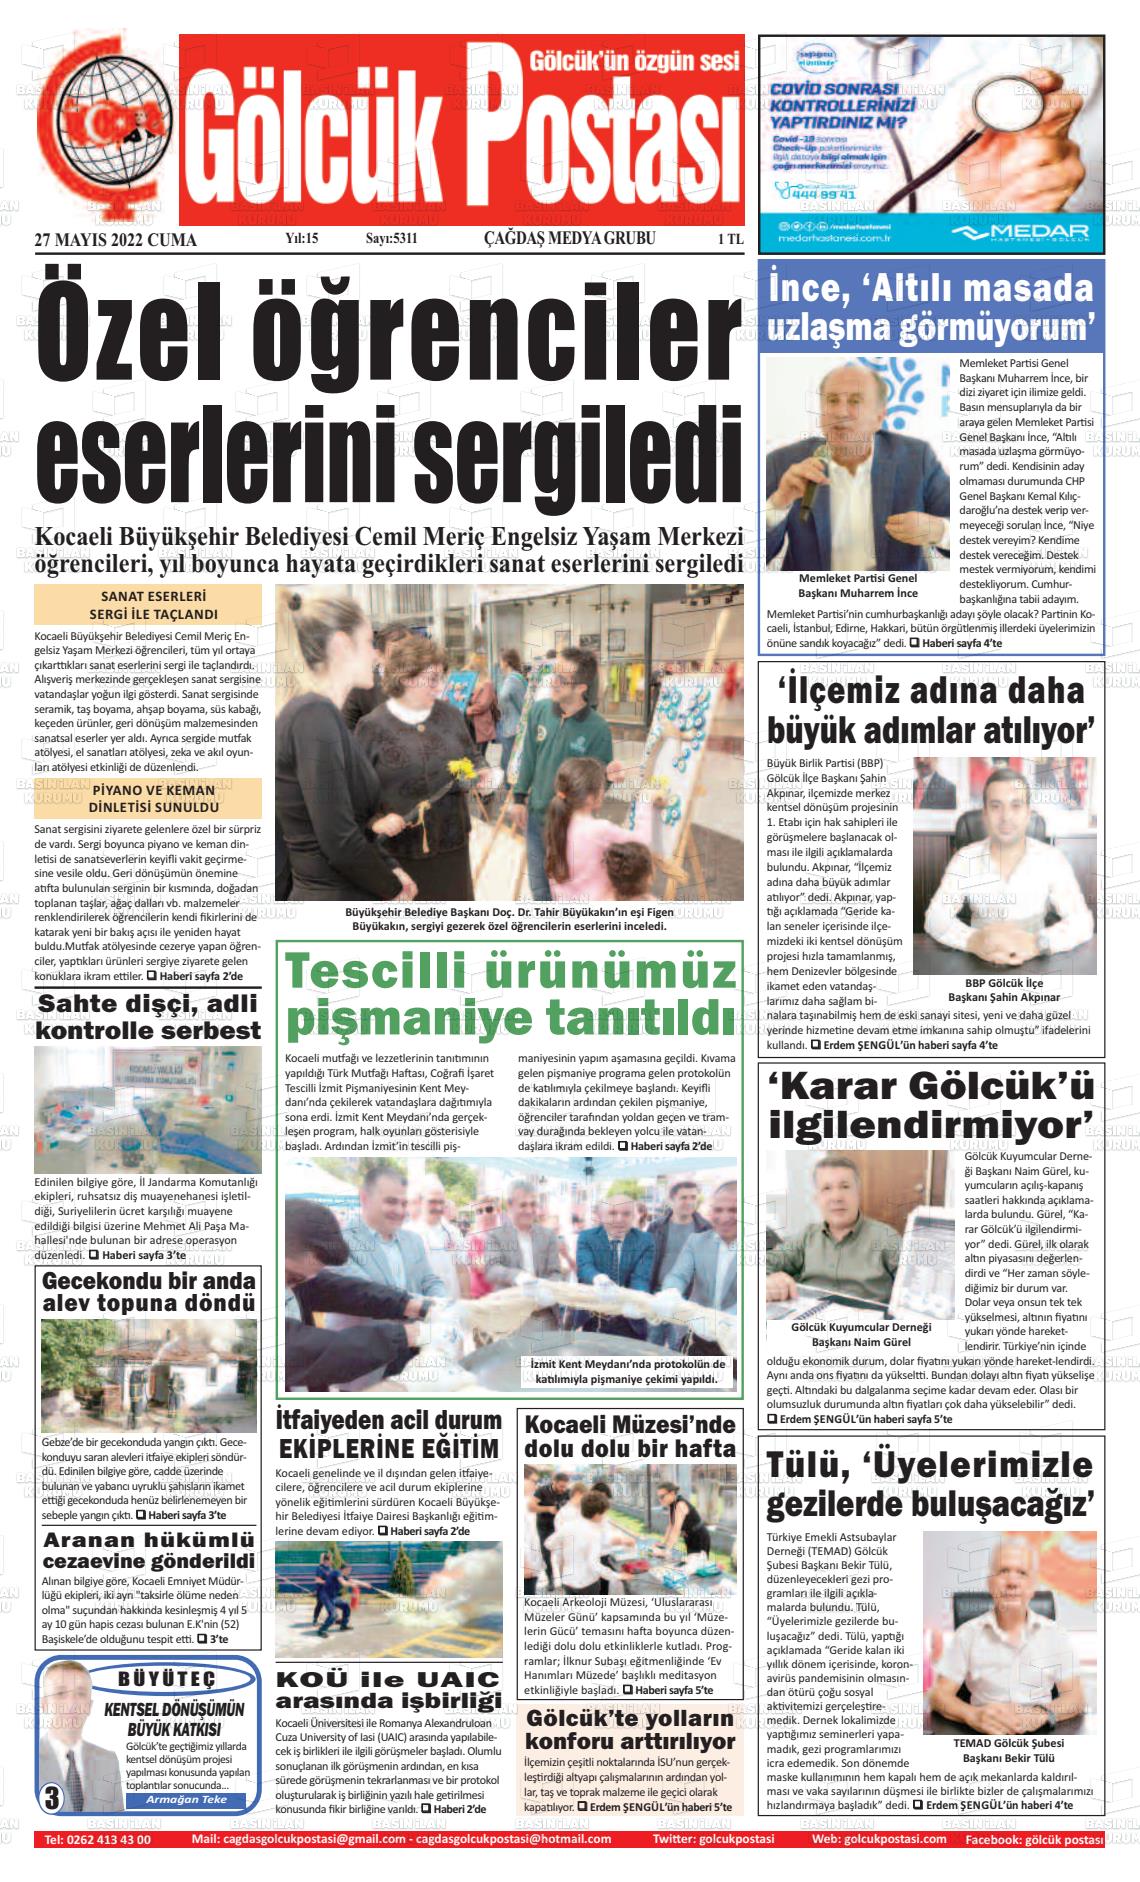 27 Mayıs 2022 Gölcük Postasi Gazete Manşeti